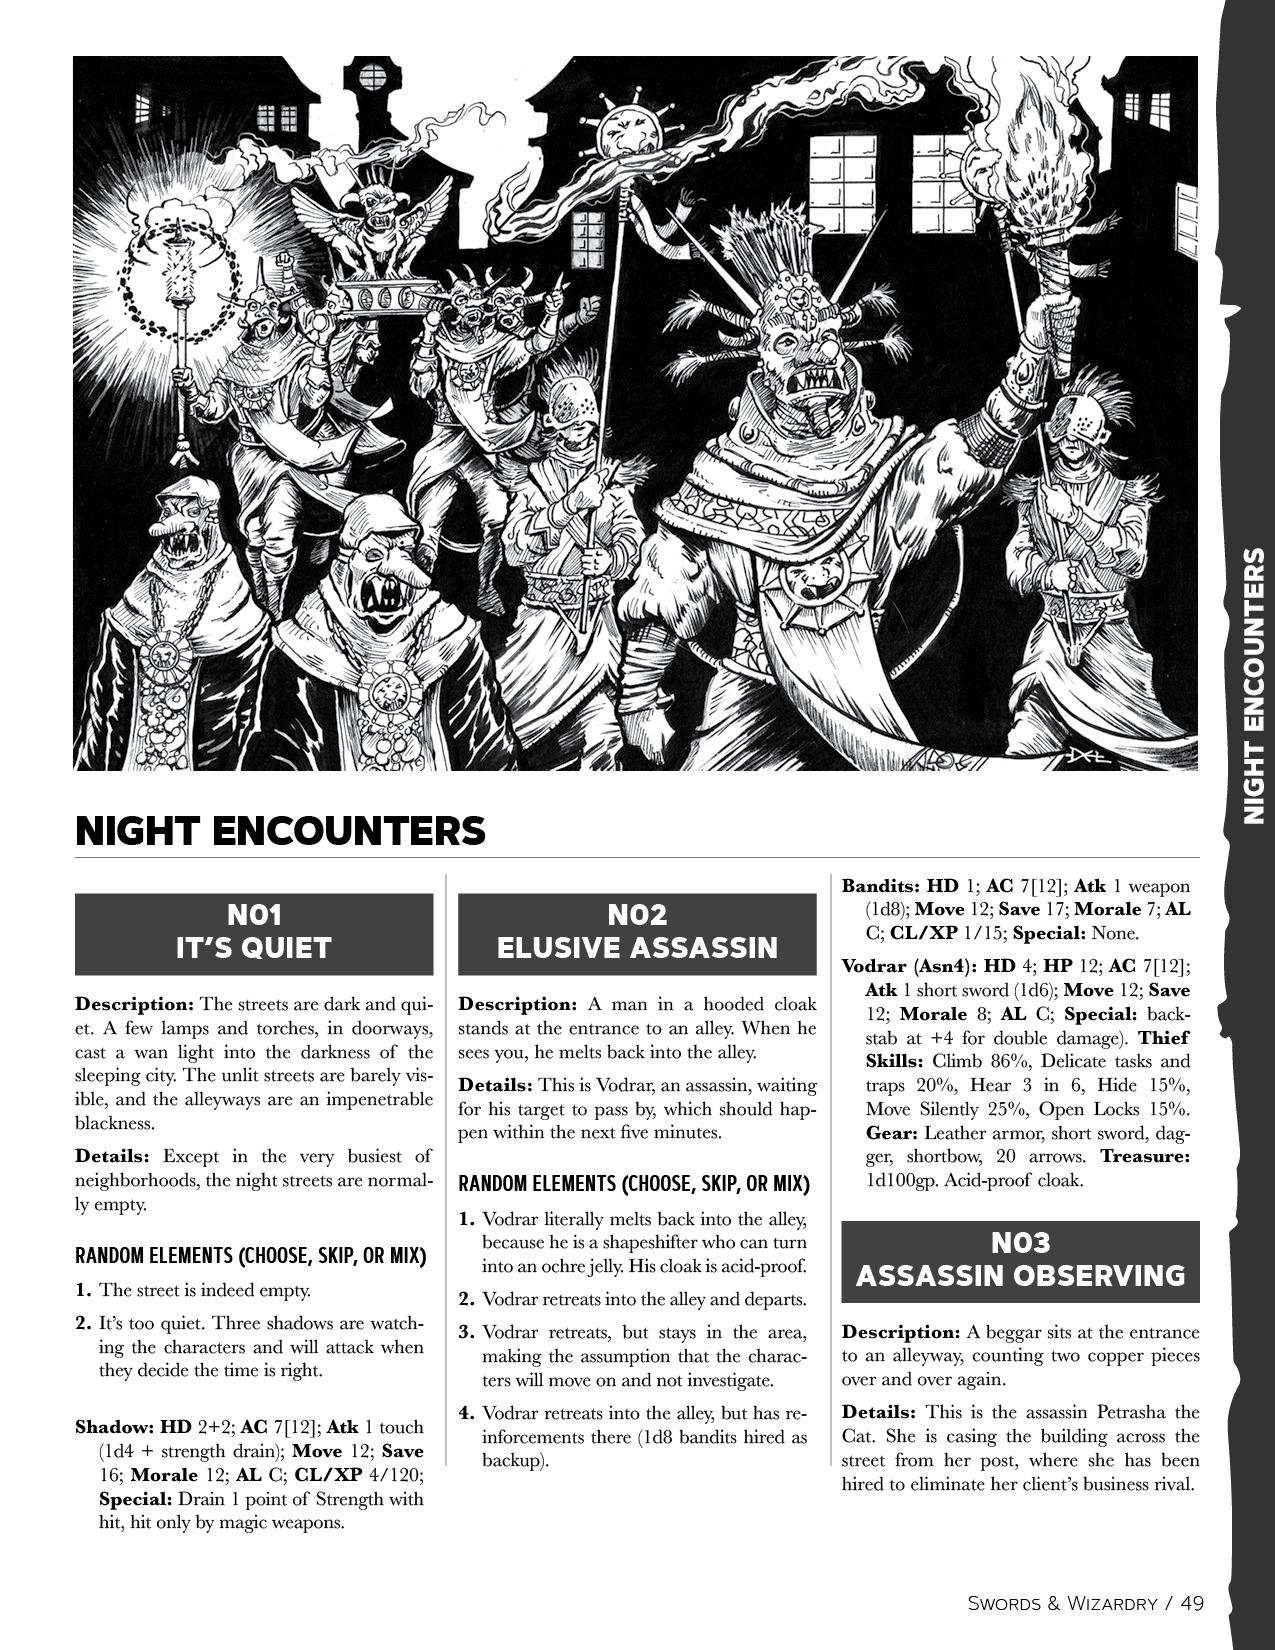 City Encounters for Swords & Wizardry PDF